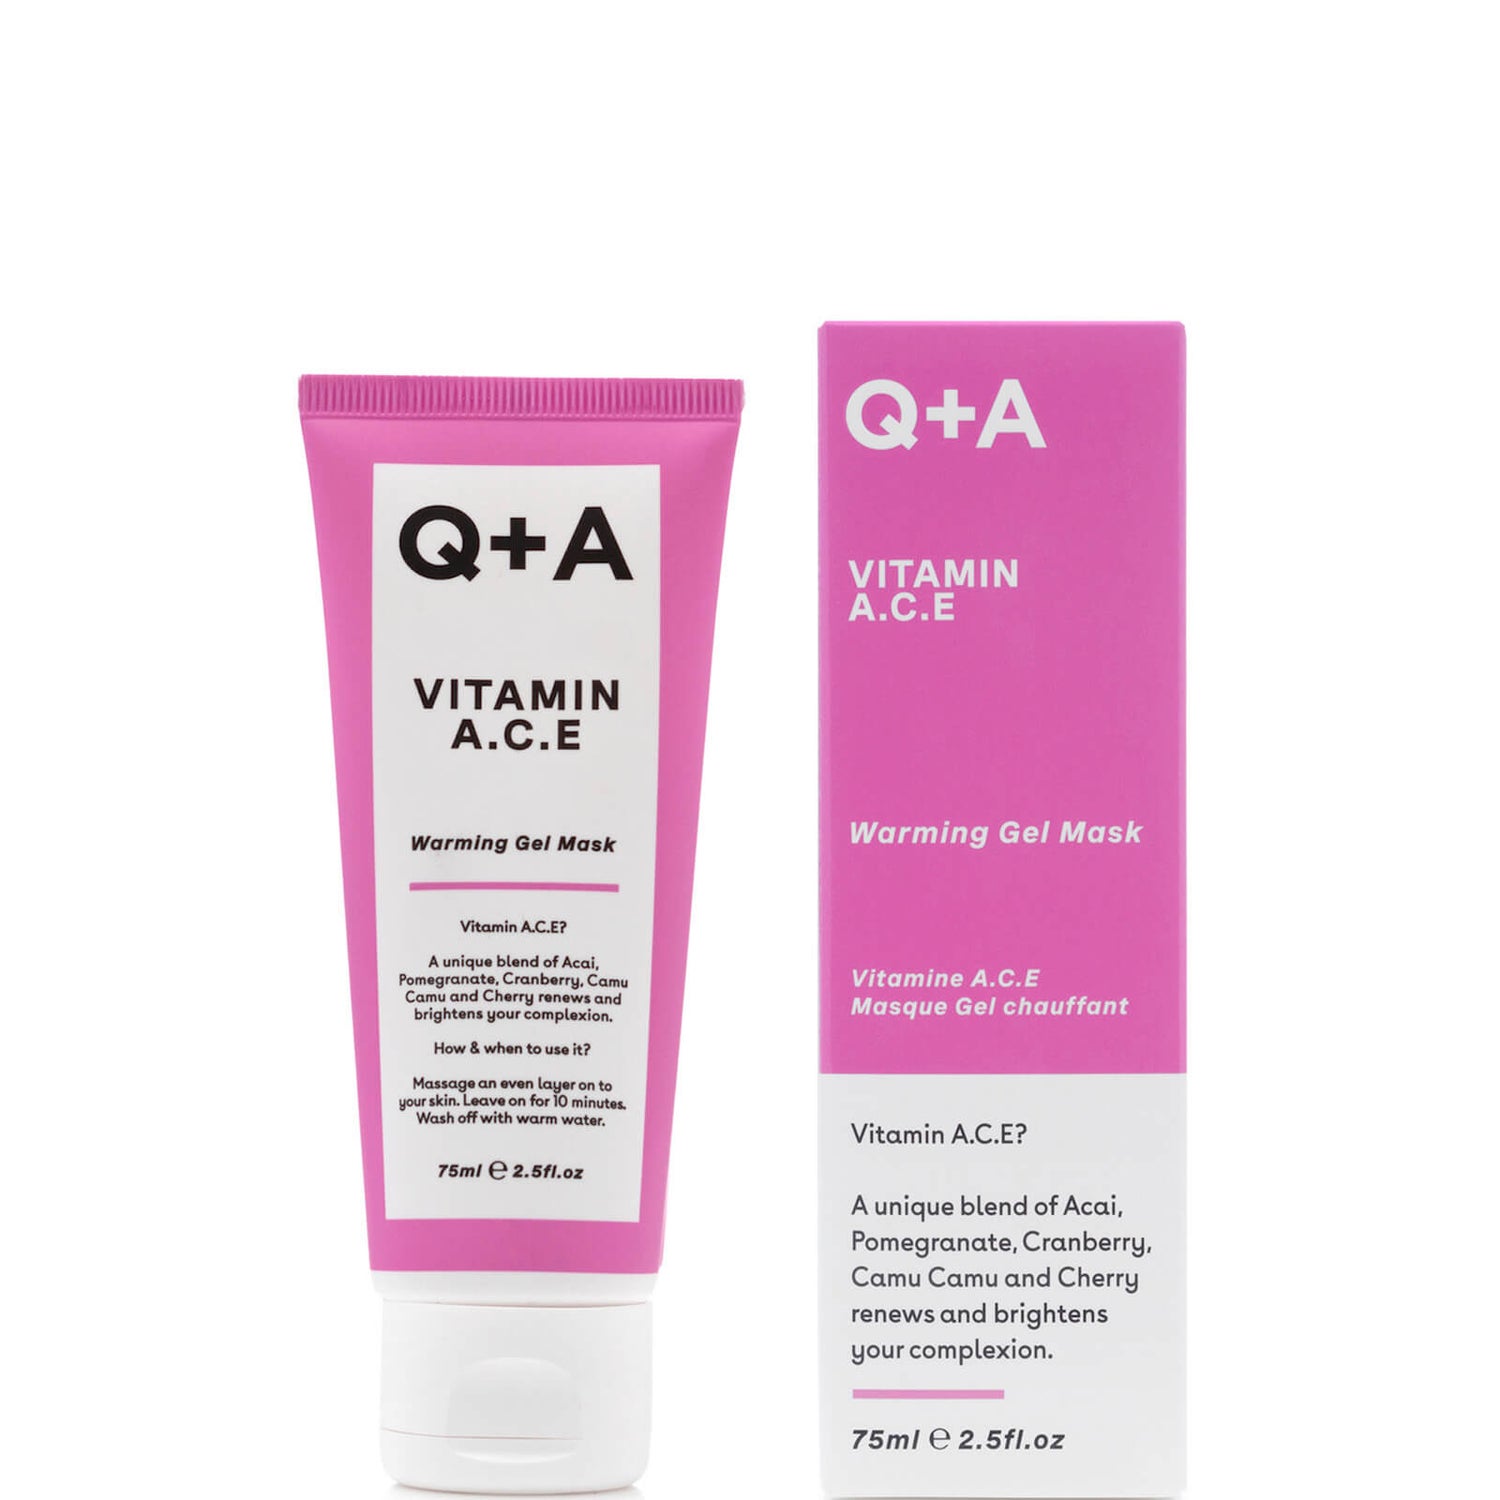 Q+A Vitamin A.C.E Warming Gel Face Mask 75ml